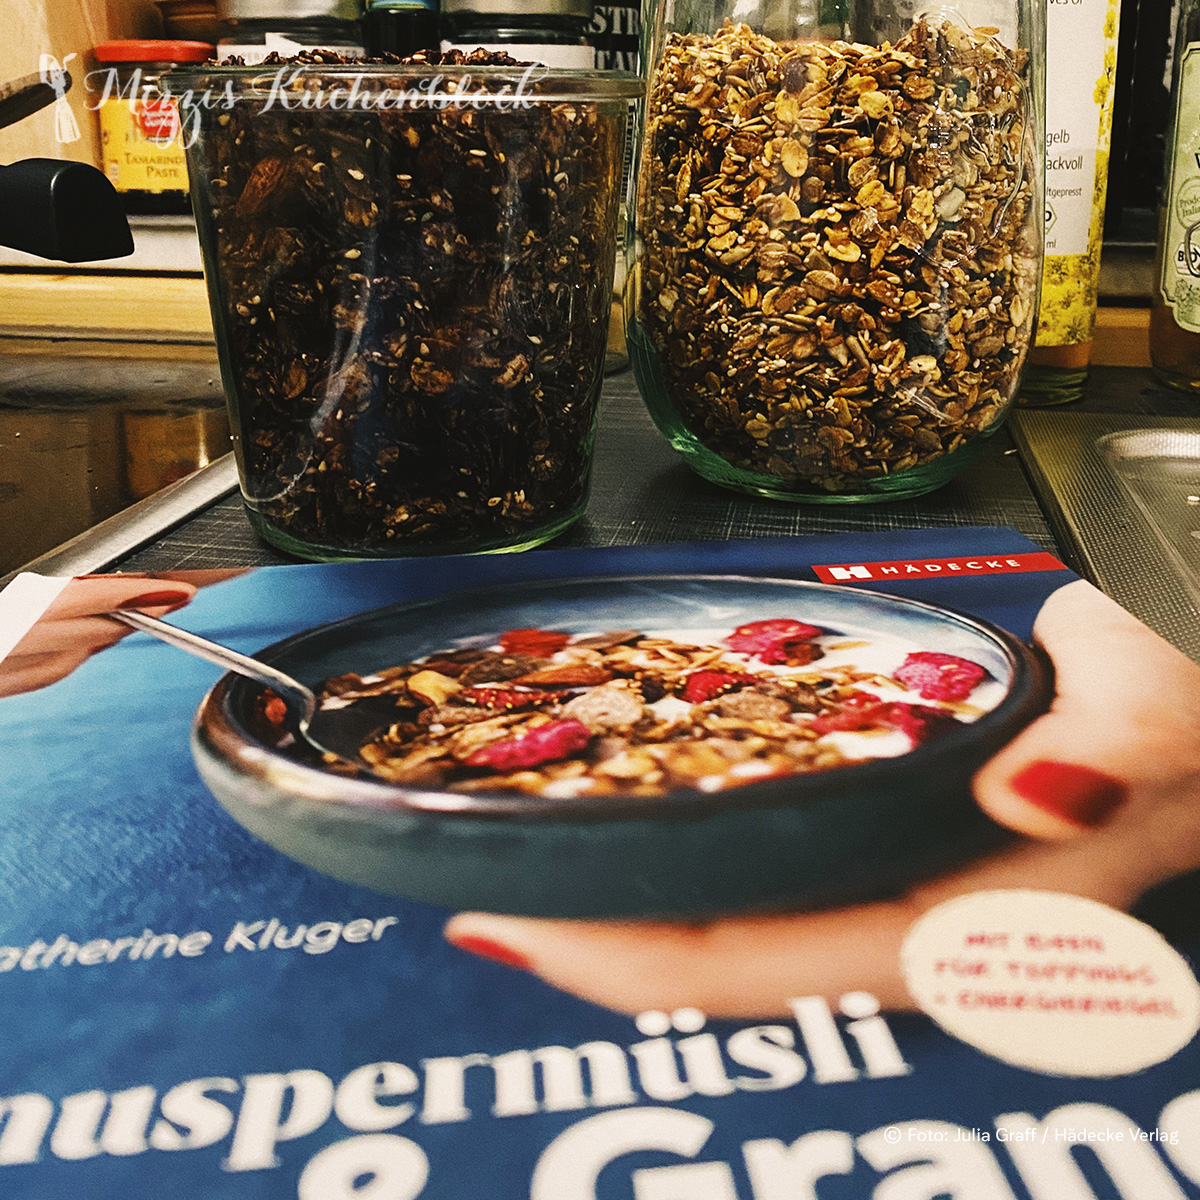 Zwei Gläser Granola und das Buch von Catherine Kluger „Knuspermüsli & Granola“ von Hädecke